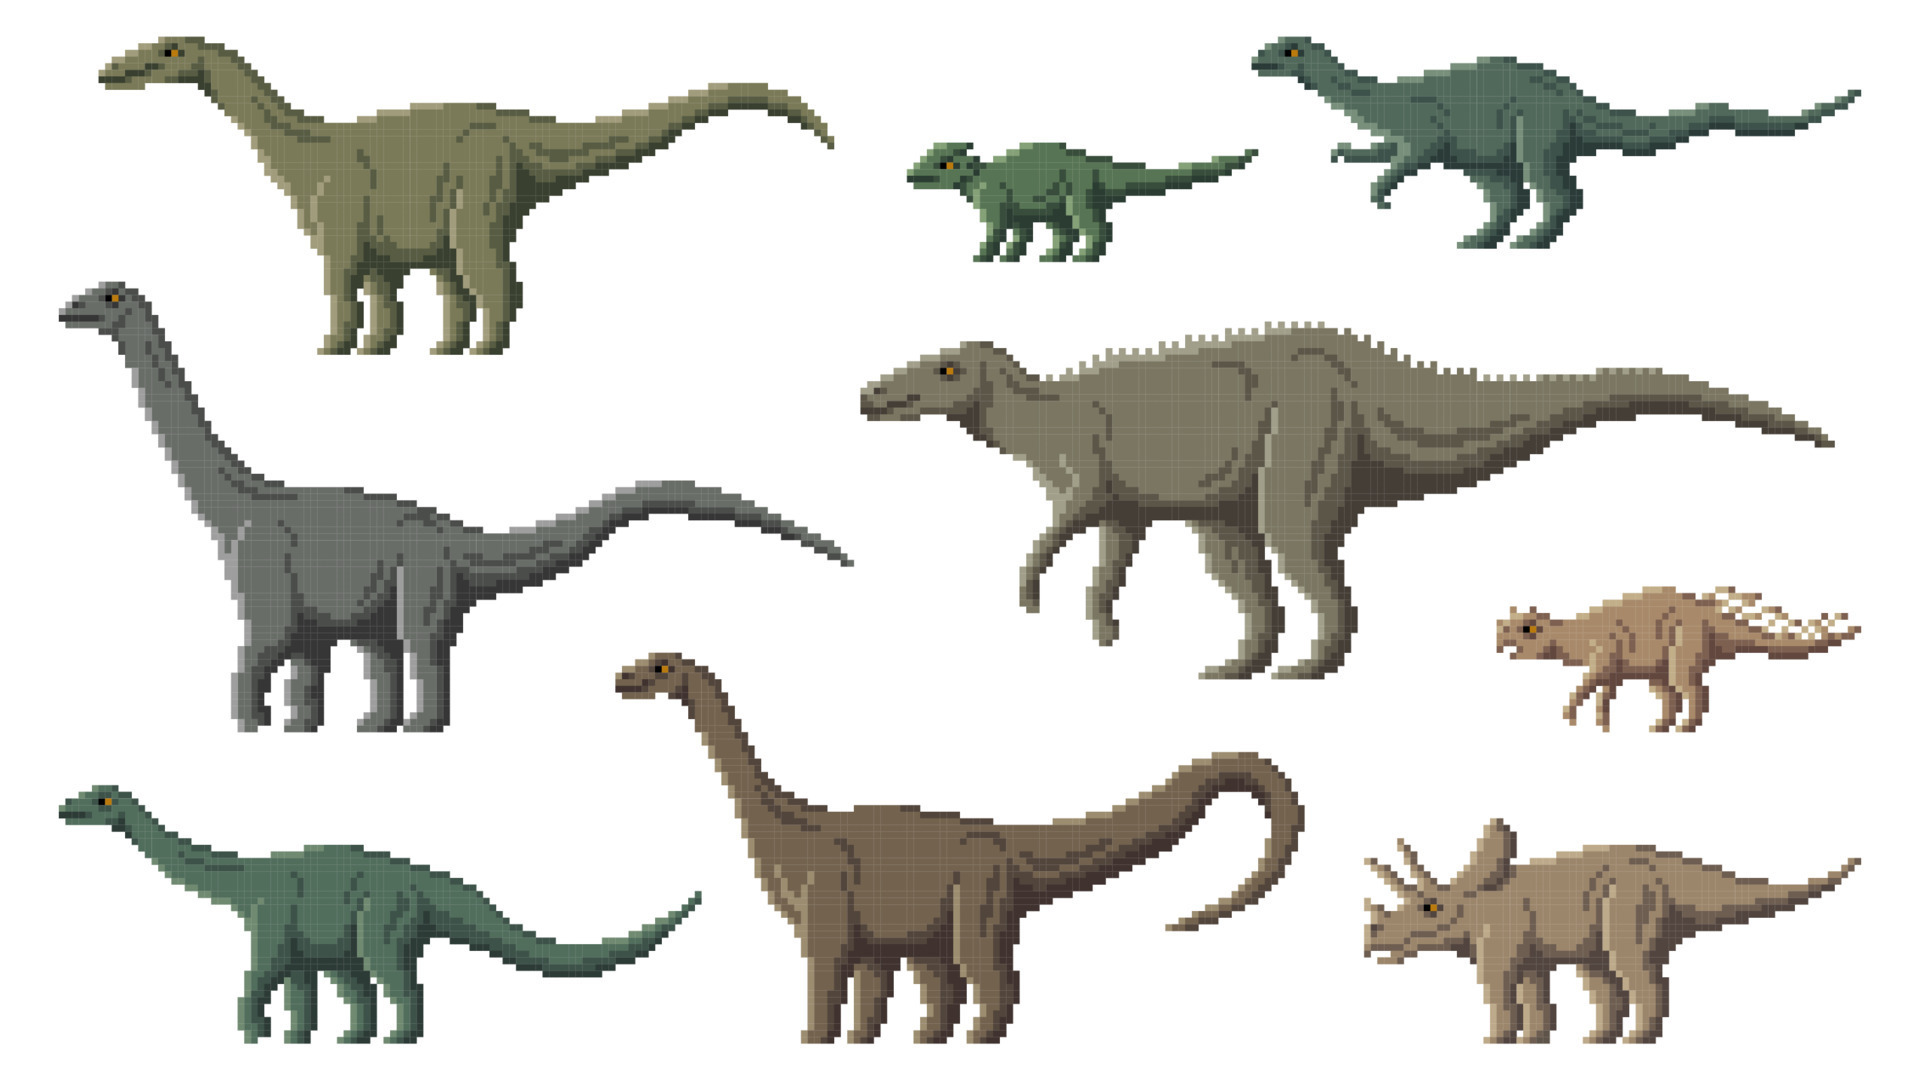 Jogos de dinossauros